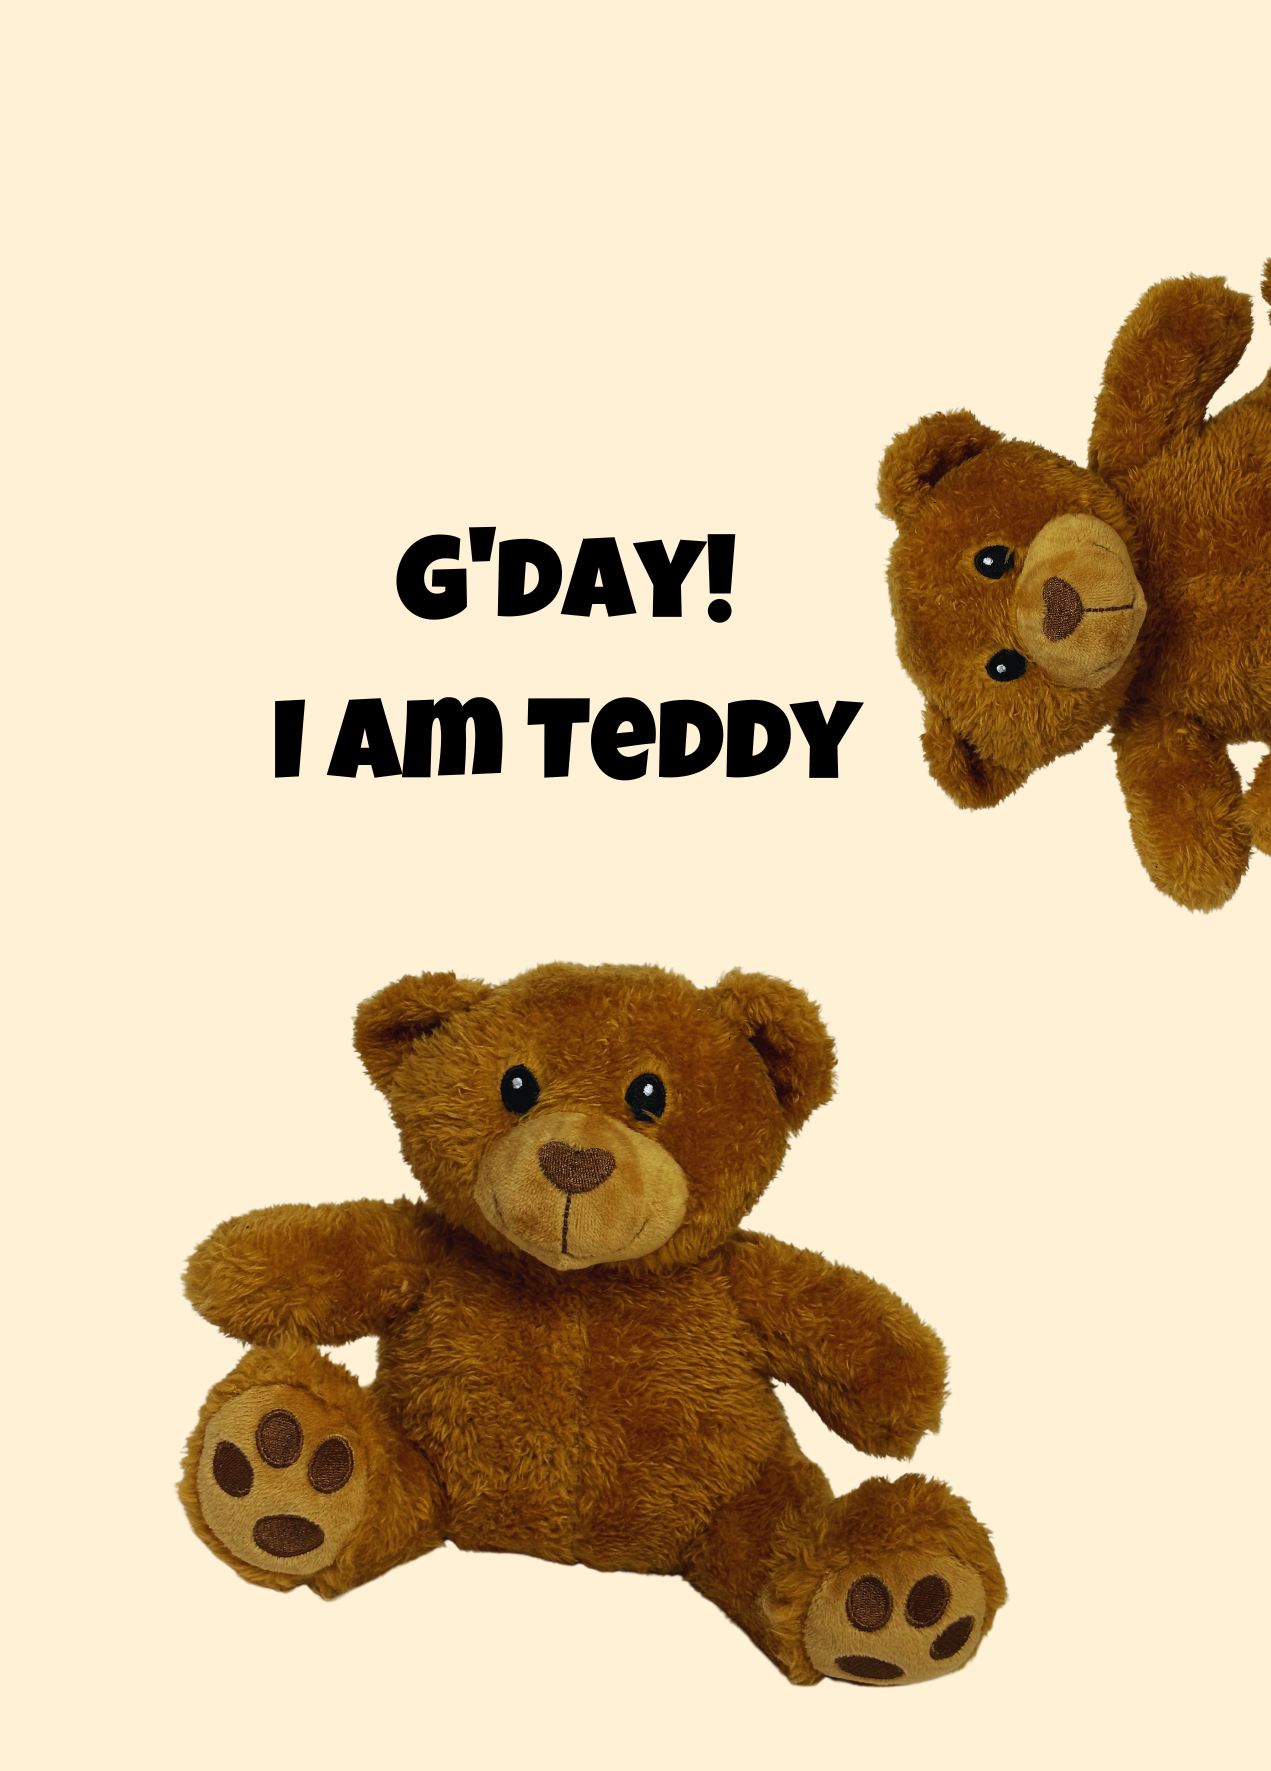 Teddy the Bear